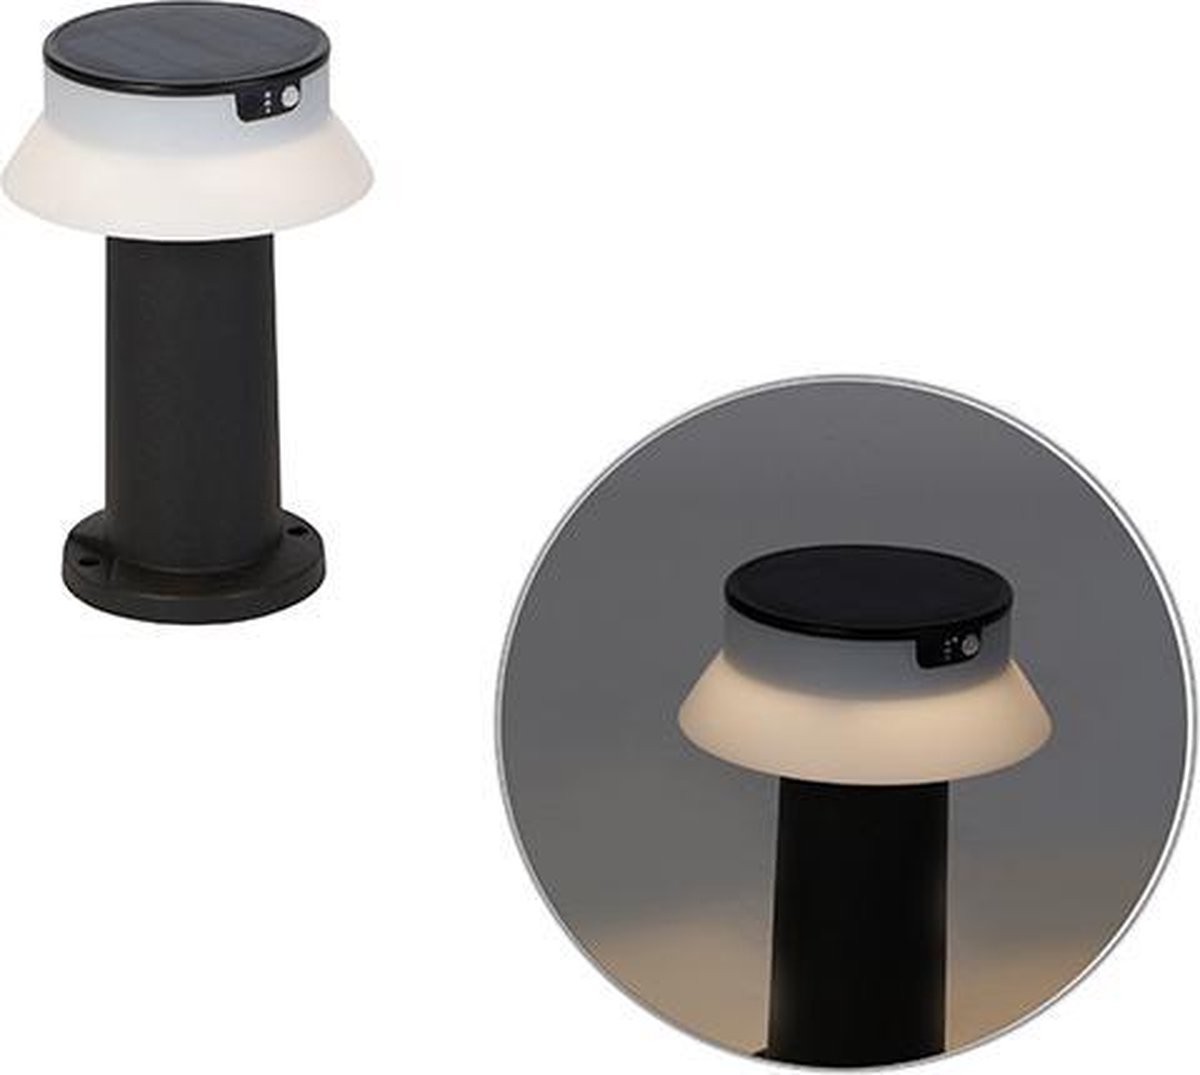 QAZQA felice - Moderne LED Dimbare Staande Buitenlamp | Staande Lamp voor buiten met Dimmer met Solar | Zonne energie - 1 lichts - H 33 cm - Zwart - Buitenverlichting - QAZQA